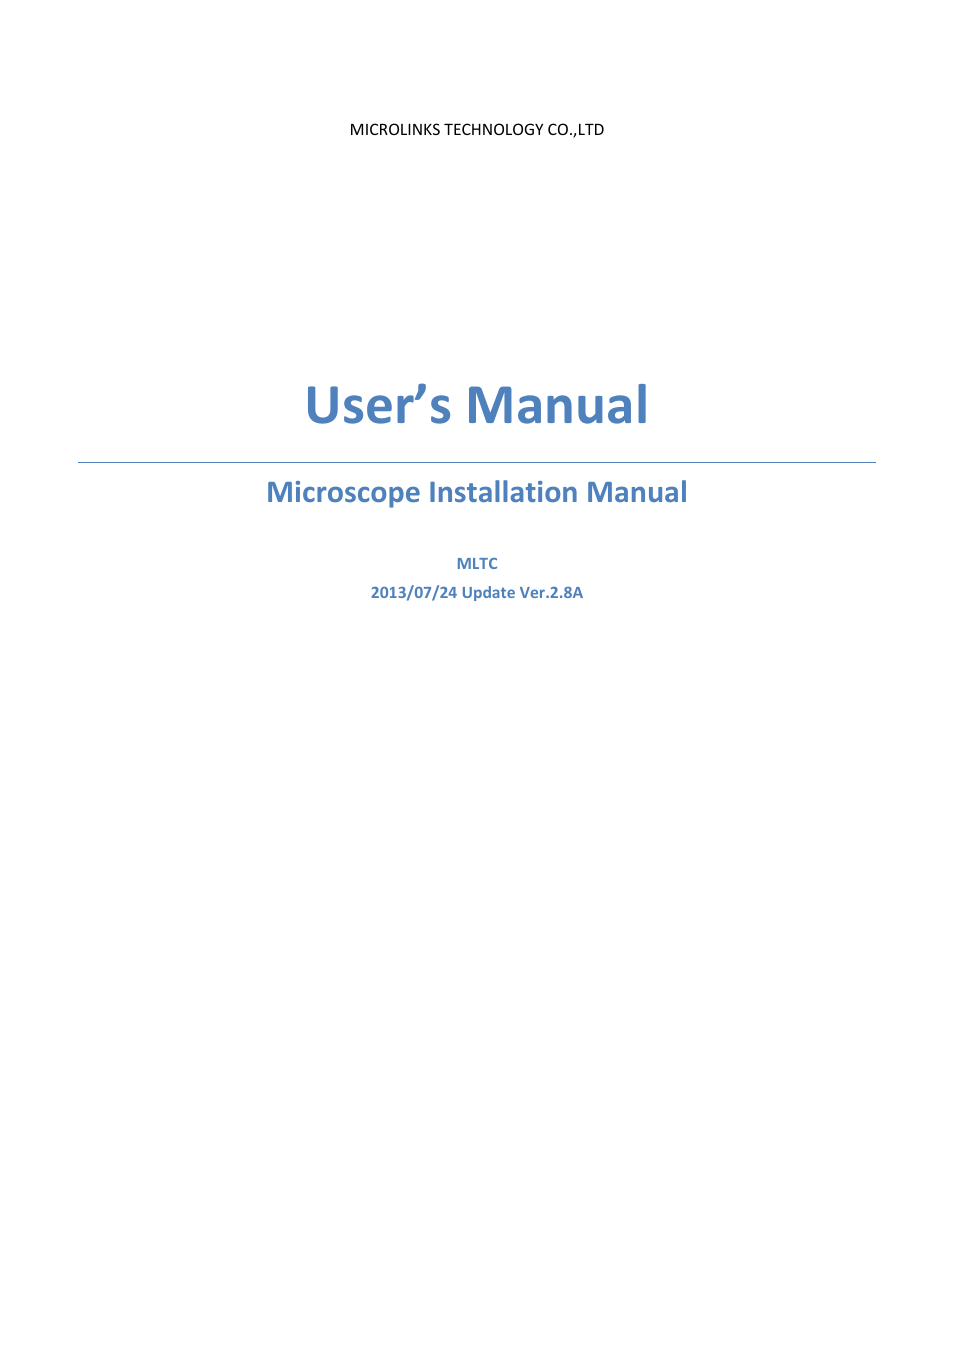 UM06 - install manual